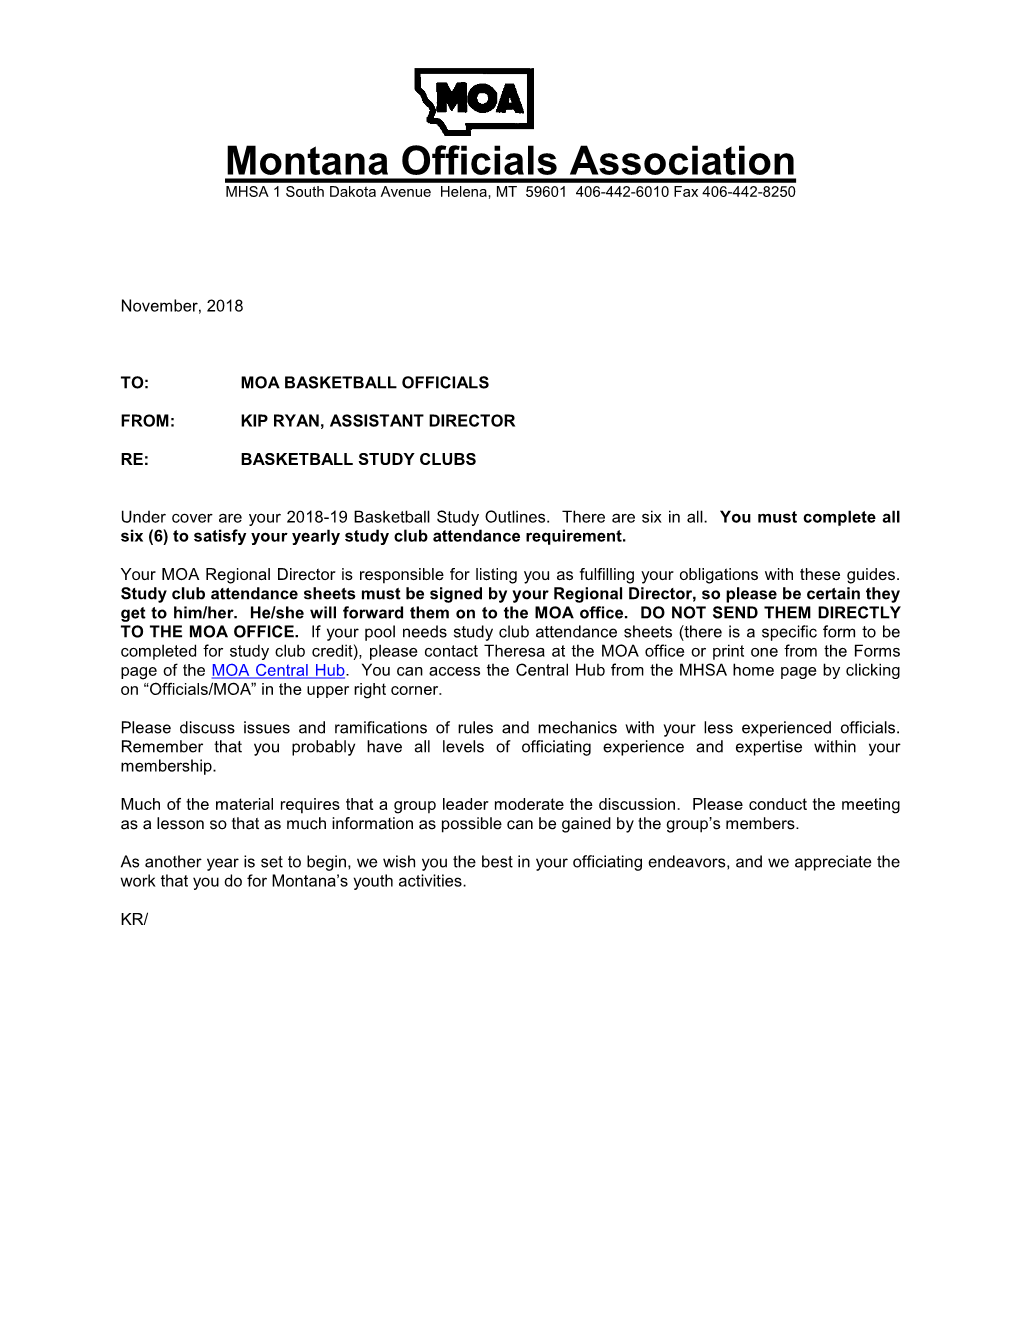 Montana Officials Association MHSA 1 South Dakota Avenue Helena, MT 59601 406-442-6010 Fax 406-442-8250